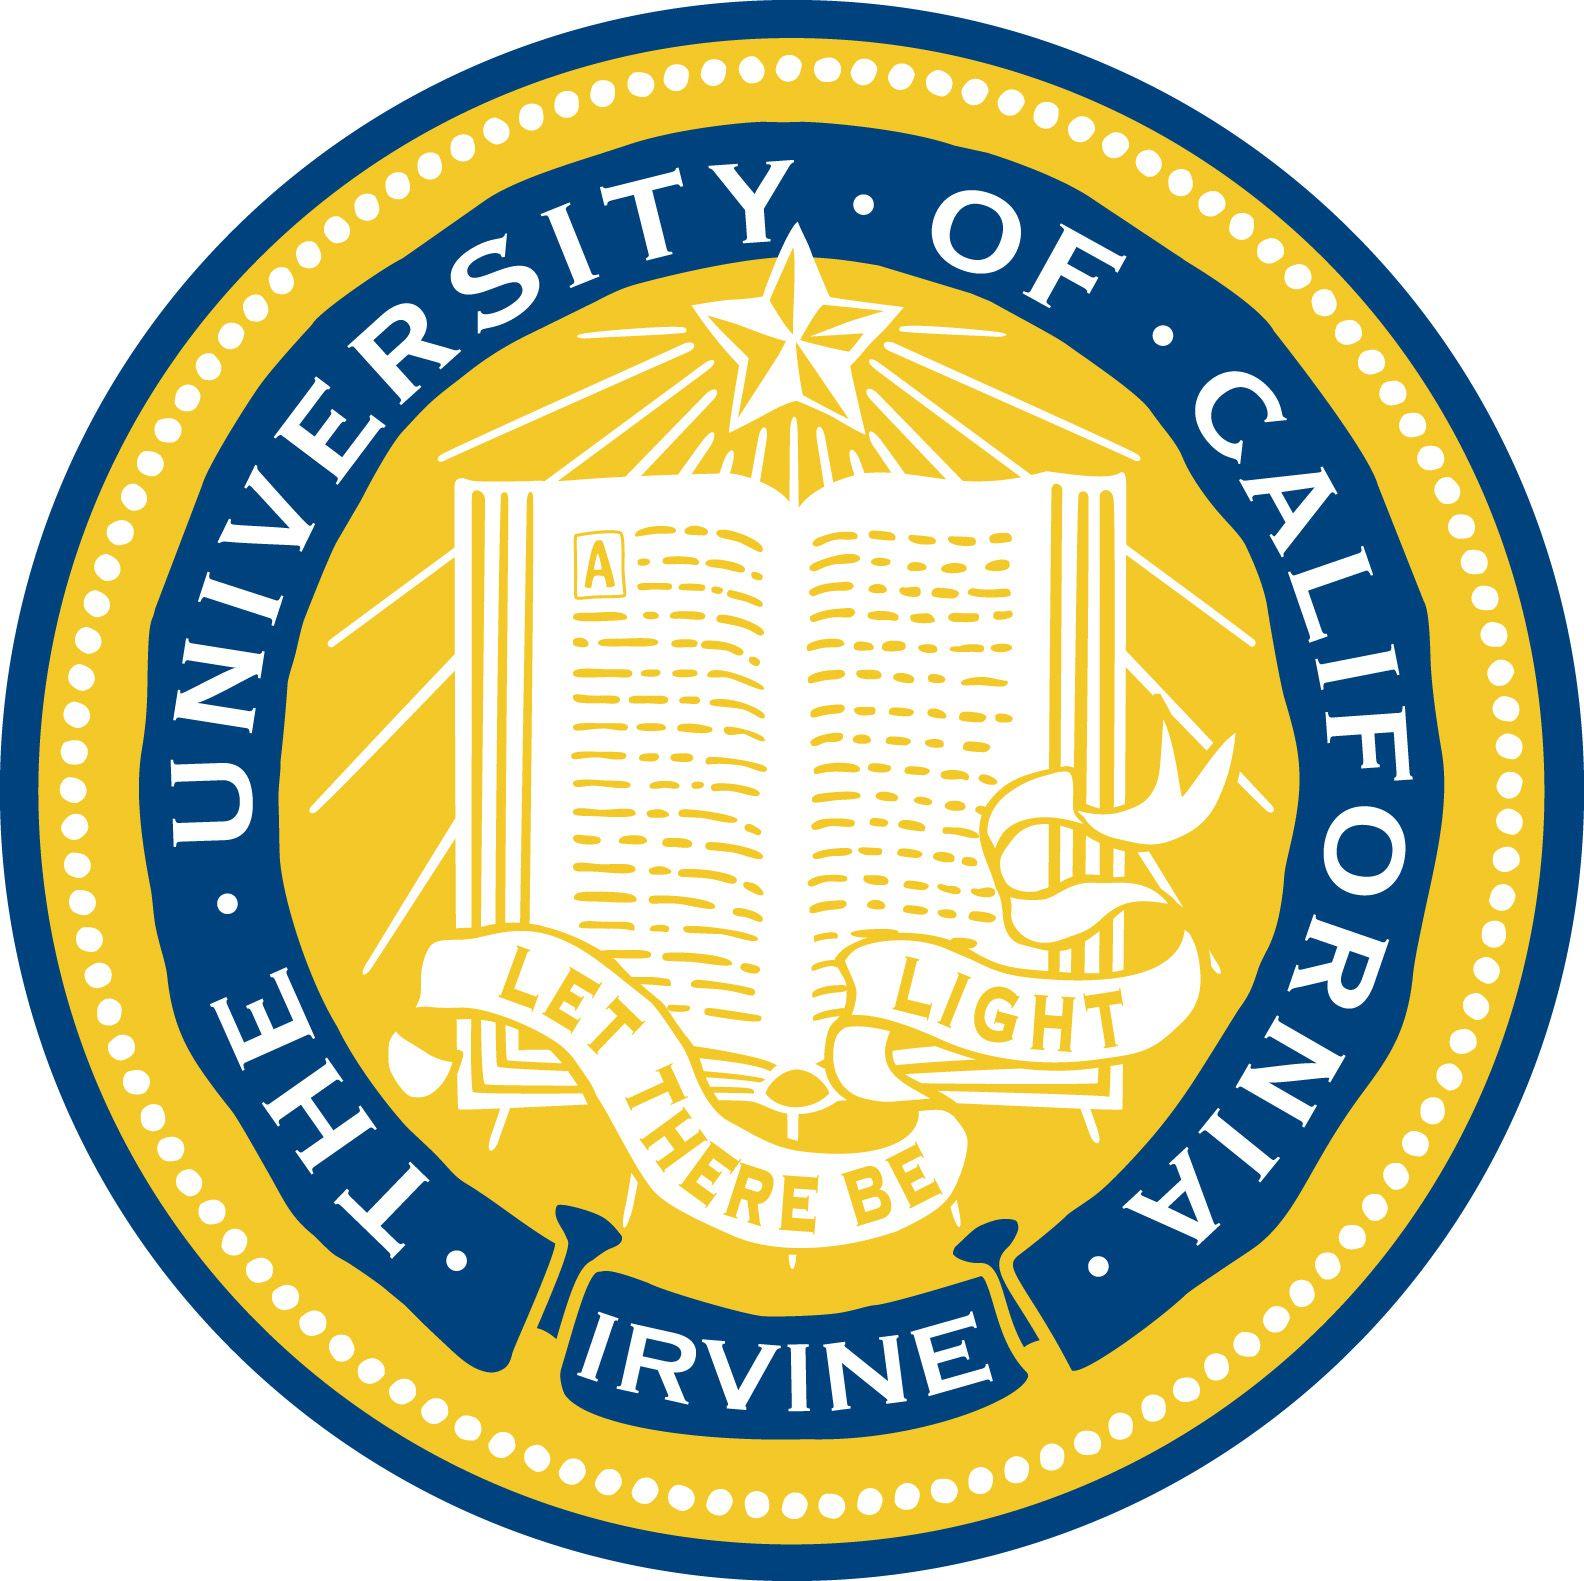 UCI Logo - Image - Uci logo.jpg | Pathology Resident Wiki | FANDOM powered by Wikia